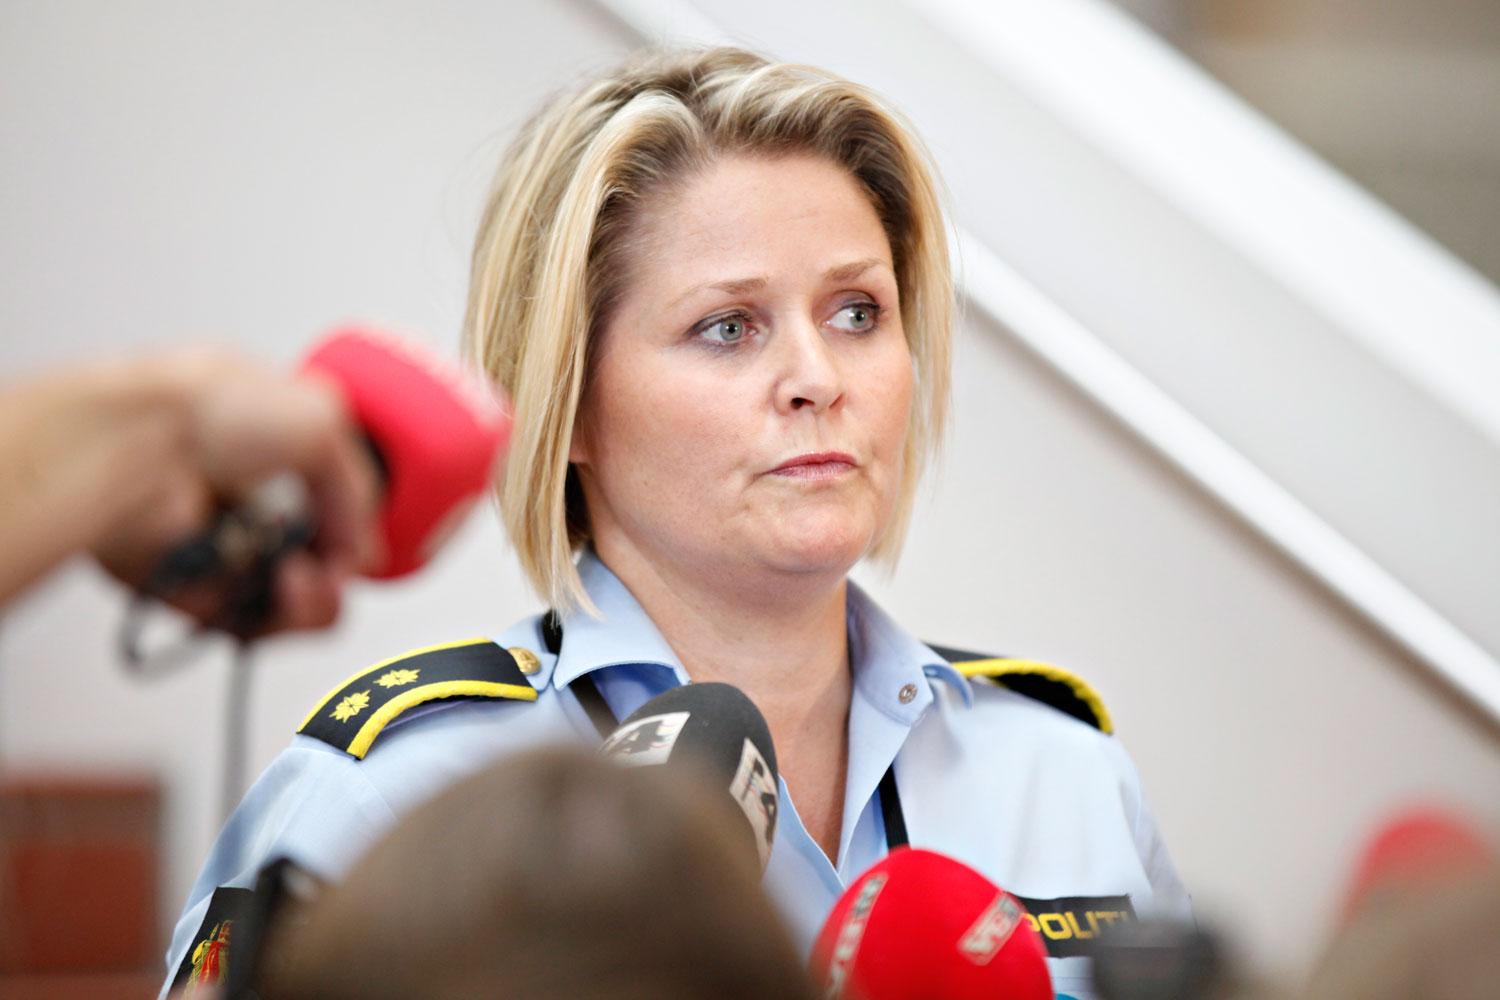 Grete Lien Metlid ledde polisens sökande efter försvunna Sigrid.